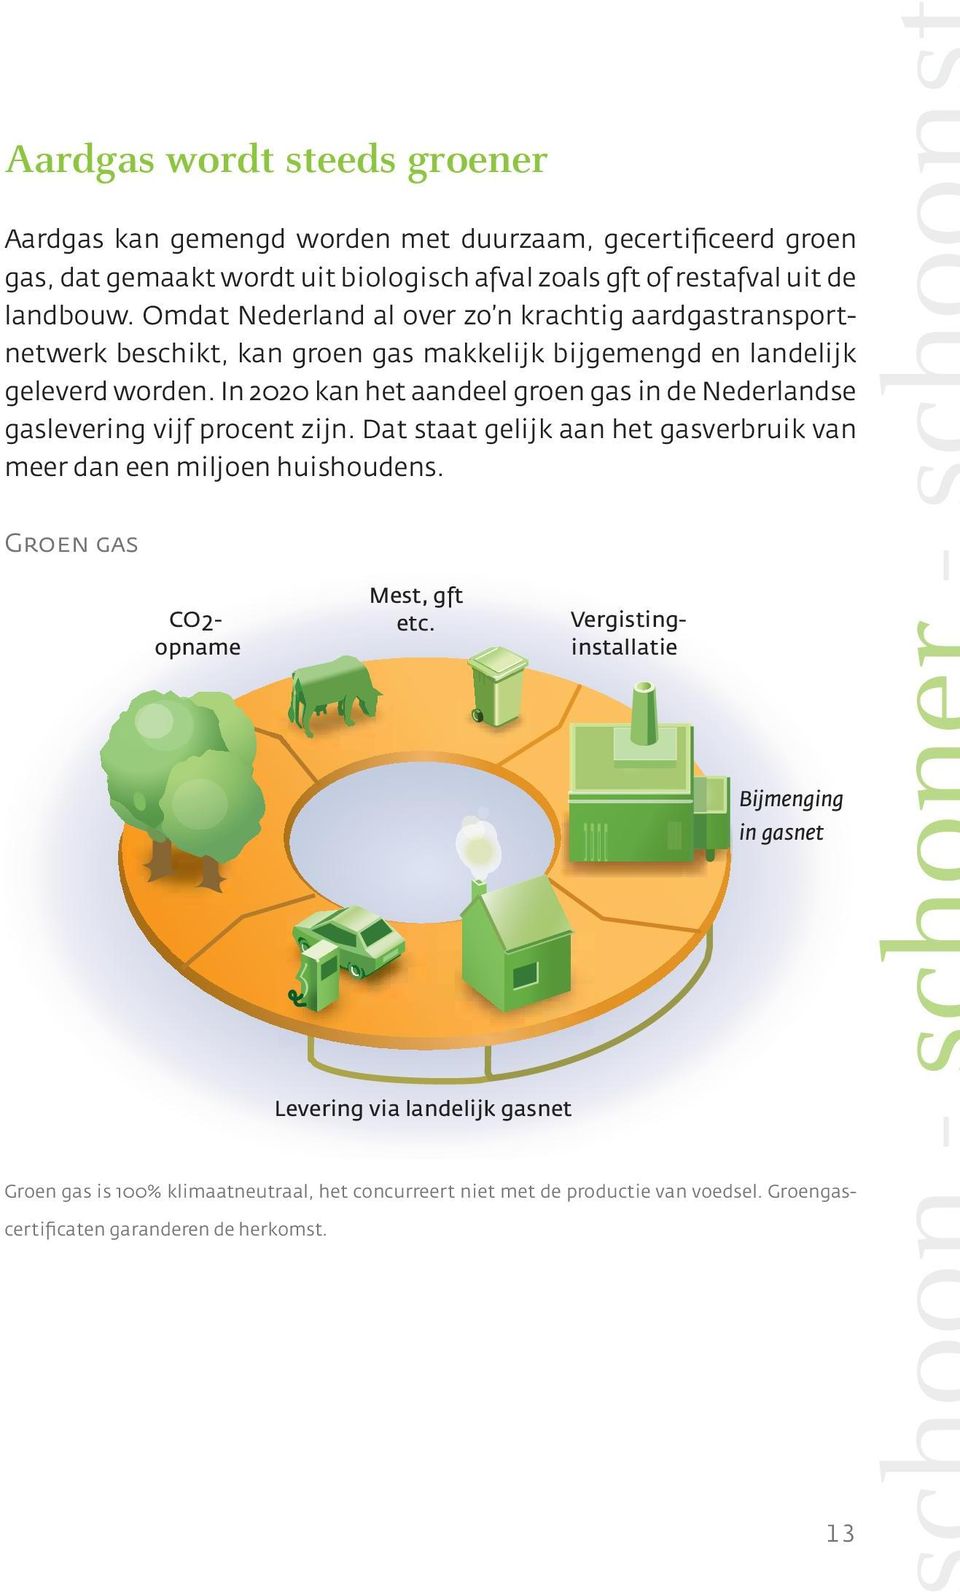 In 2020 kan het aandeel groen gas in de Nederlandse gaslevering vijf procent zijn. Dat staat gelijk aan het gasverbruik van meer dan een miljoen huishoudens.